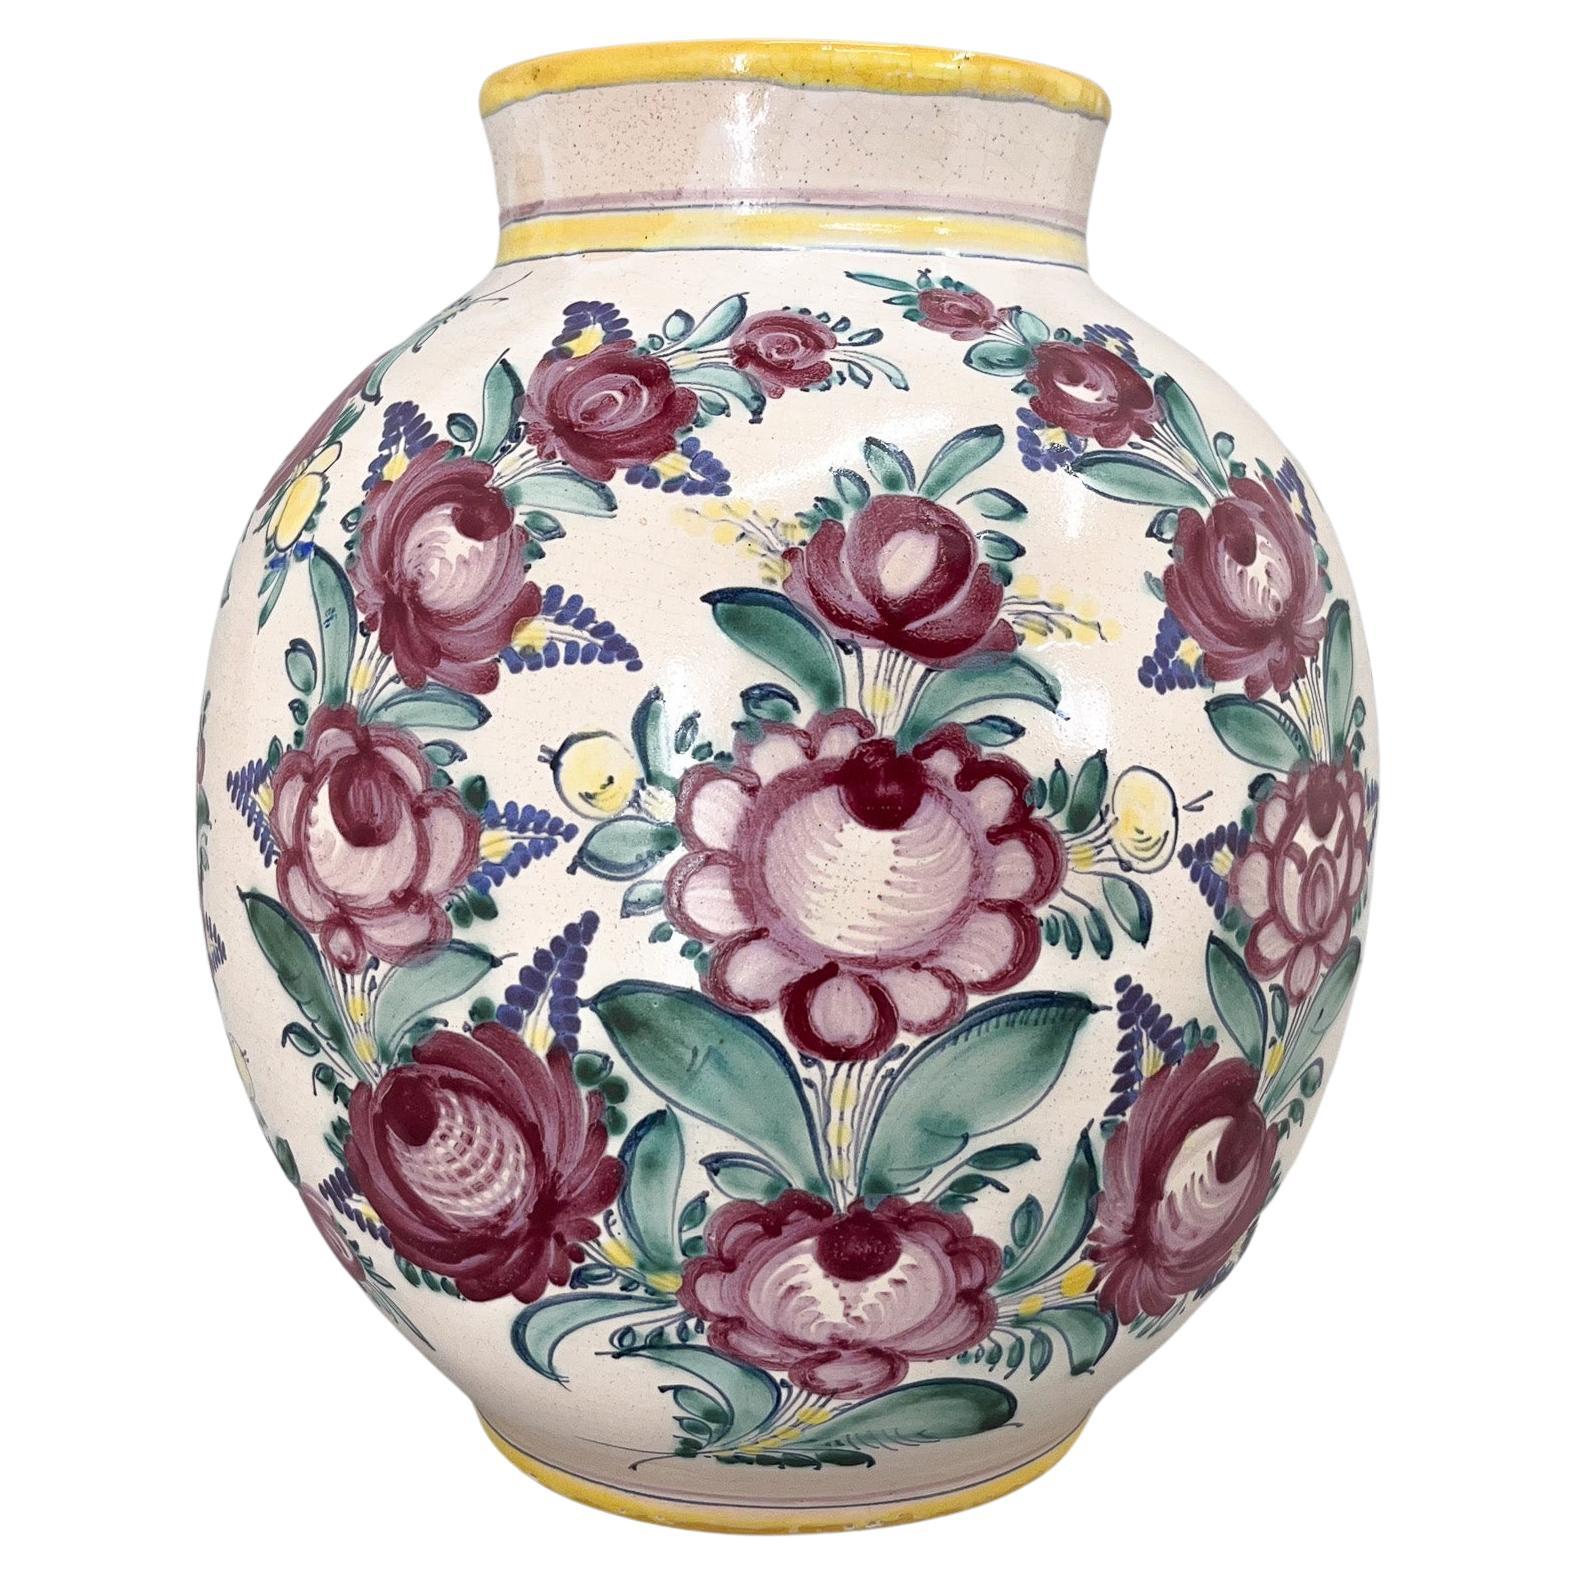 1950s Large Hand Painted Tupesy Ceramic Vase